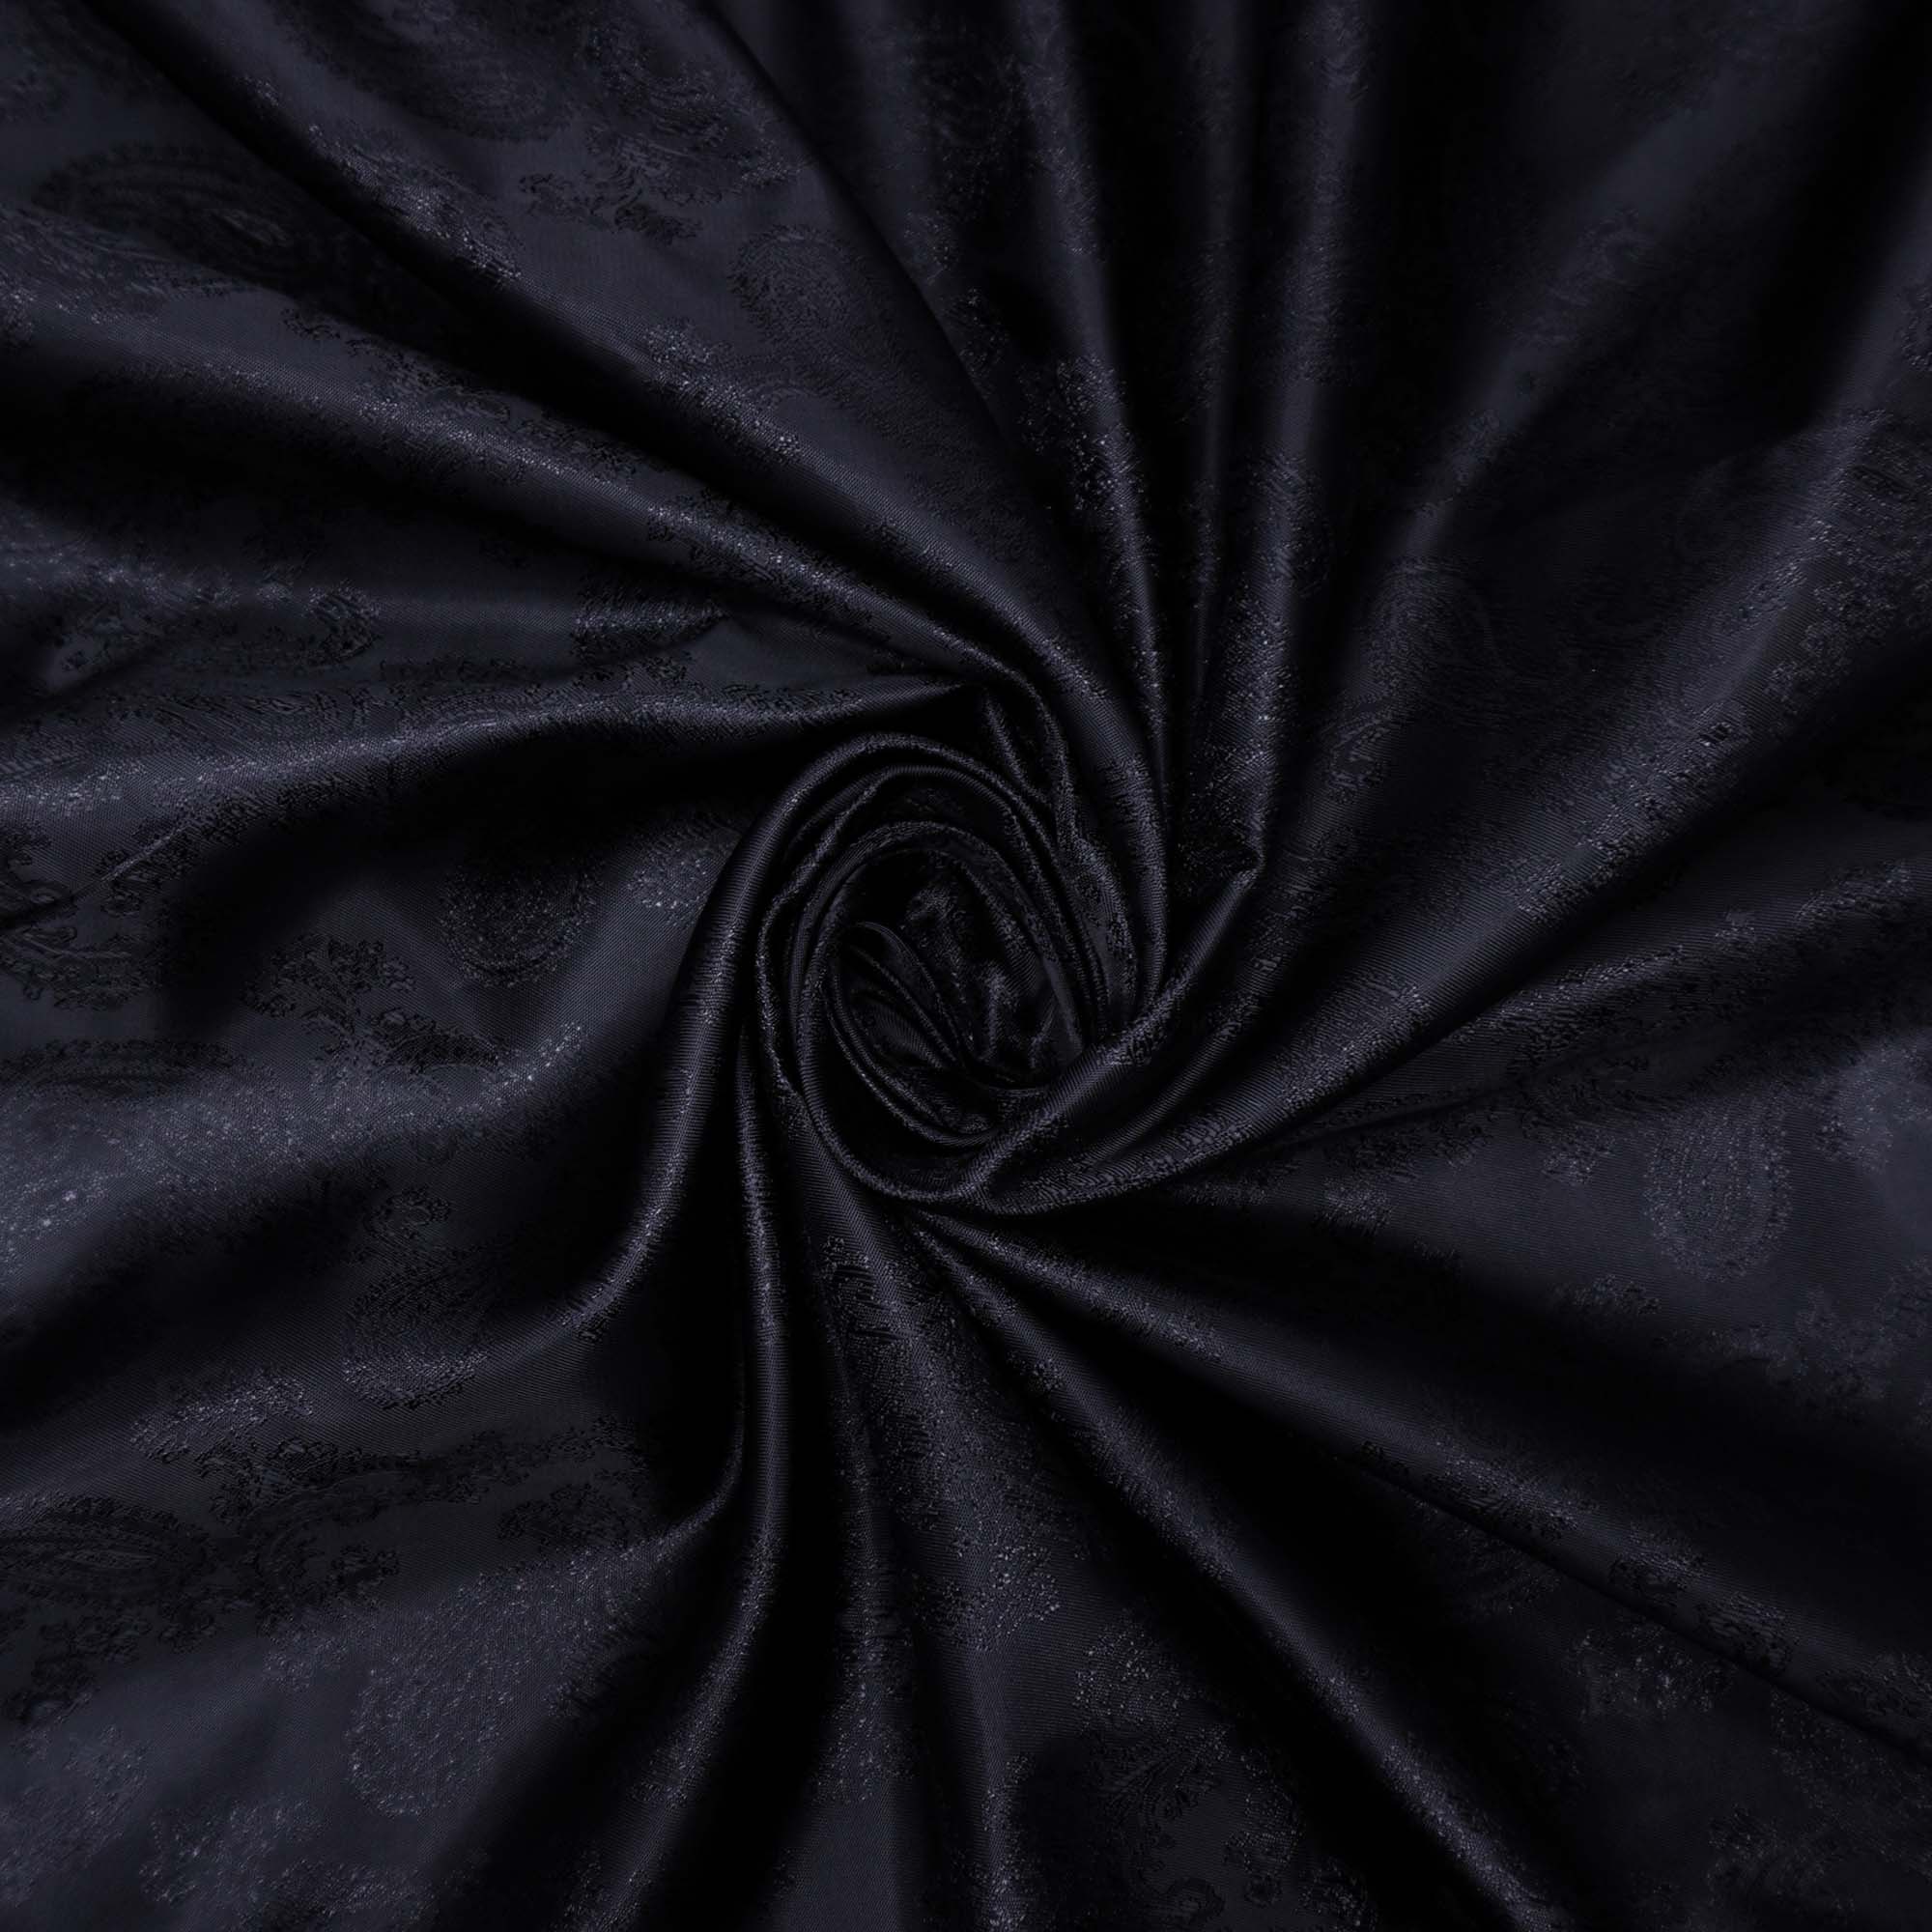 Tecido forro maquinetado arabesco preto